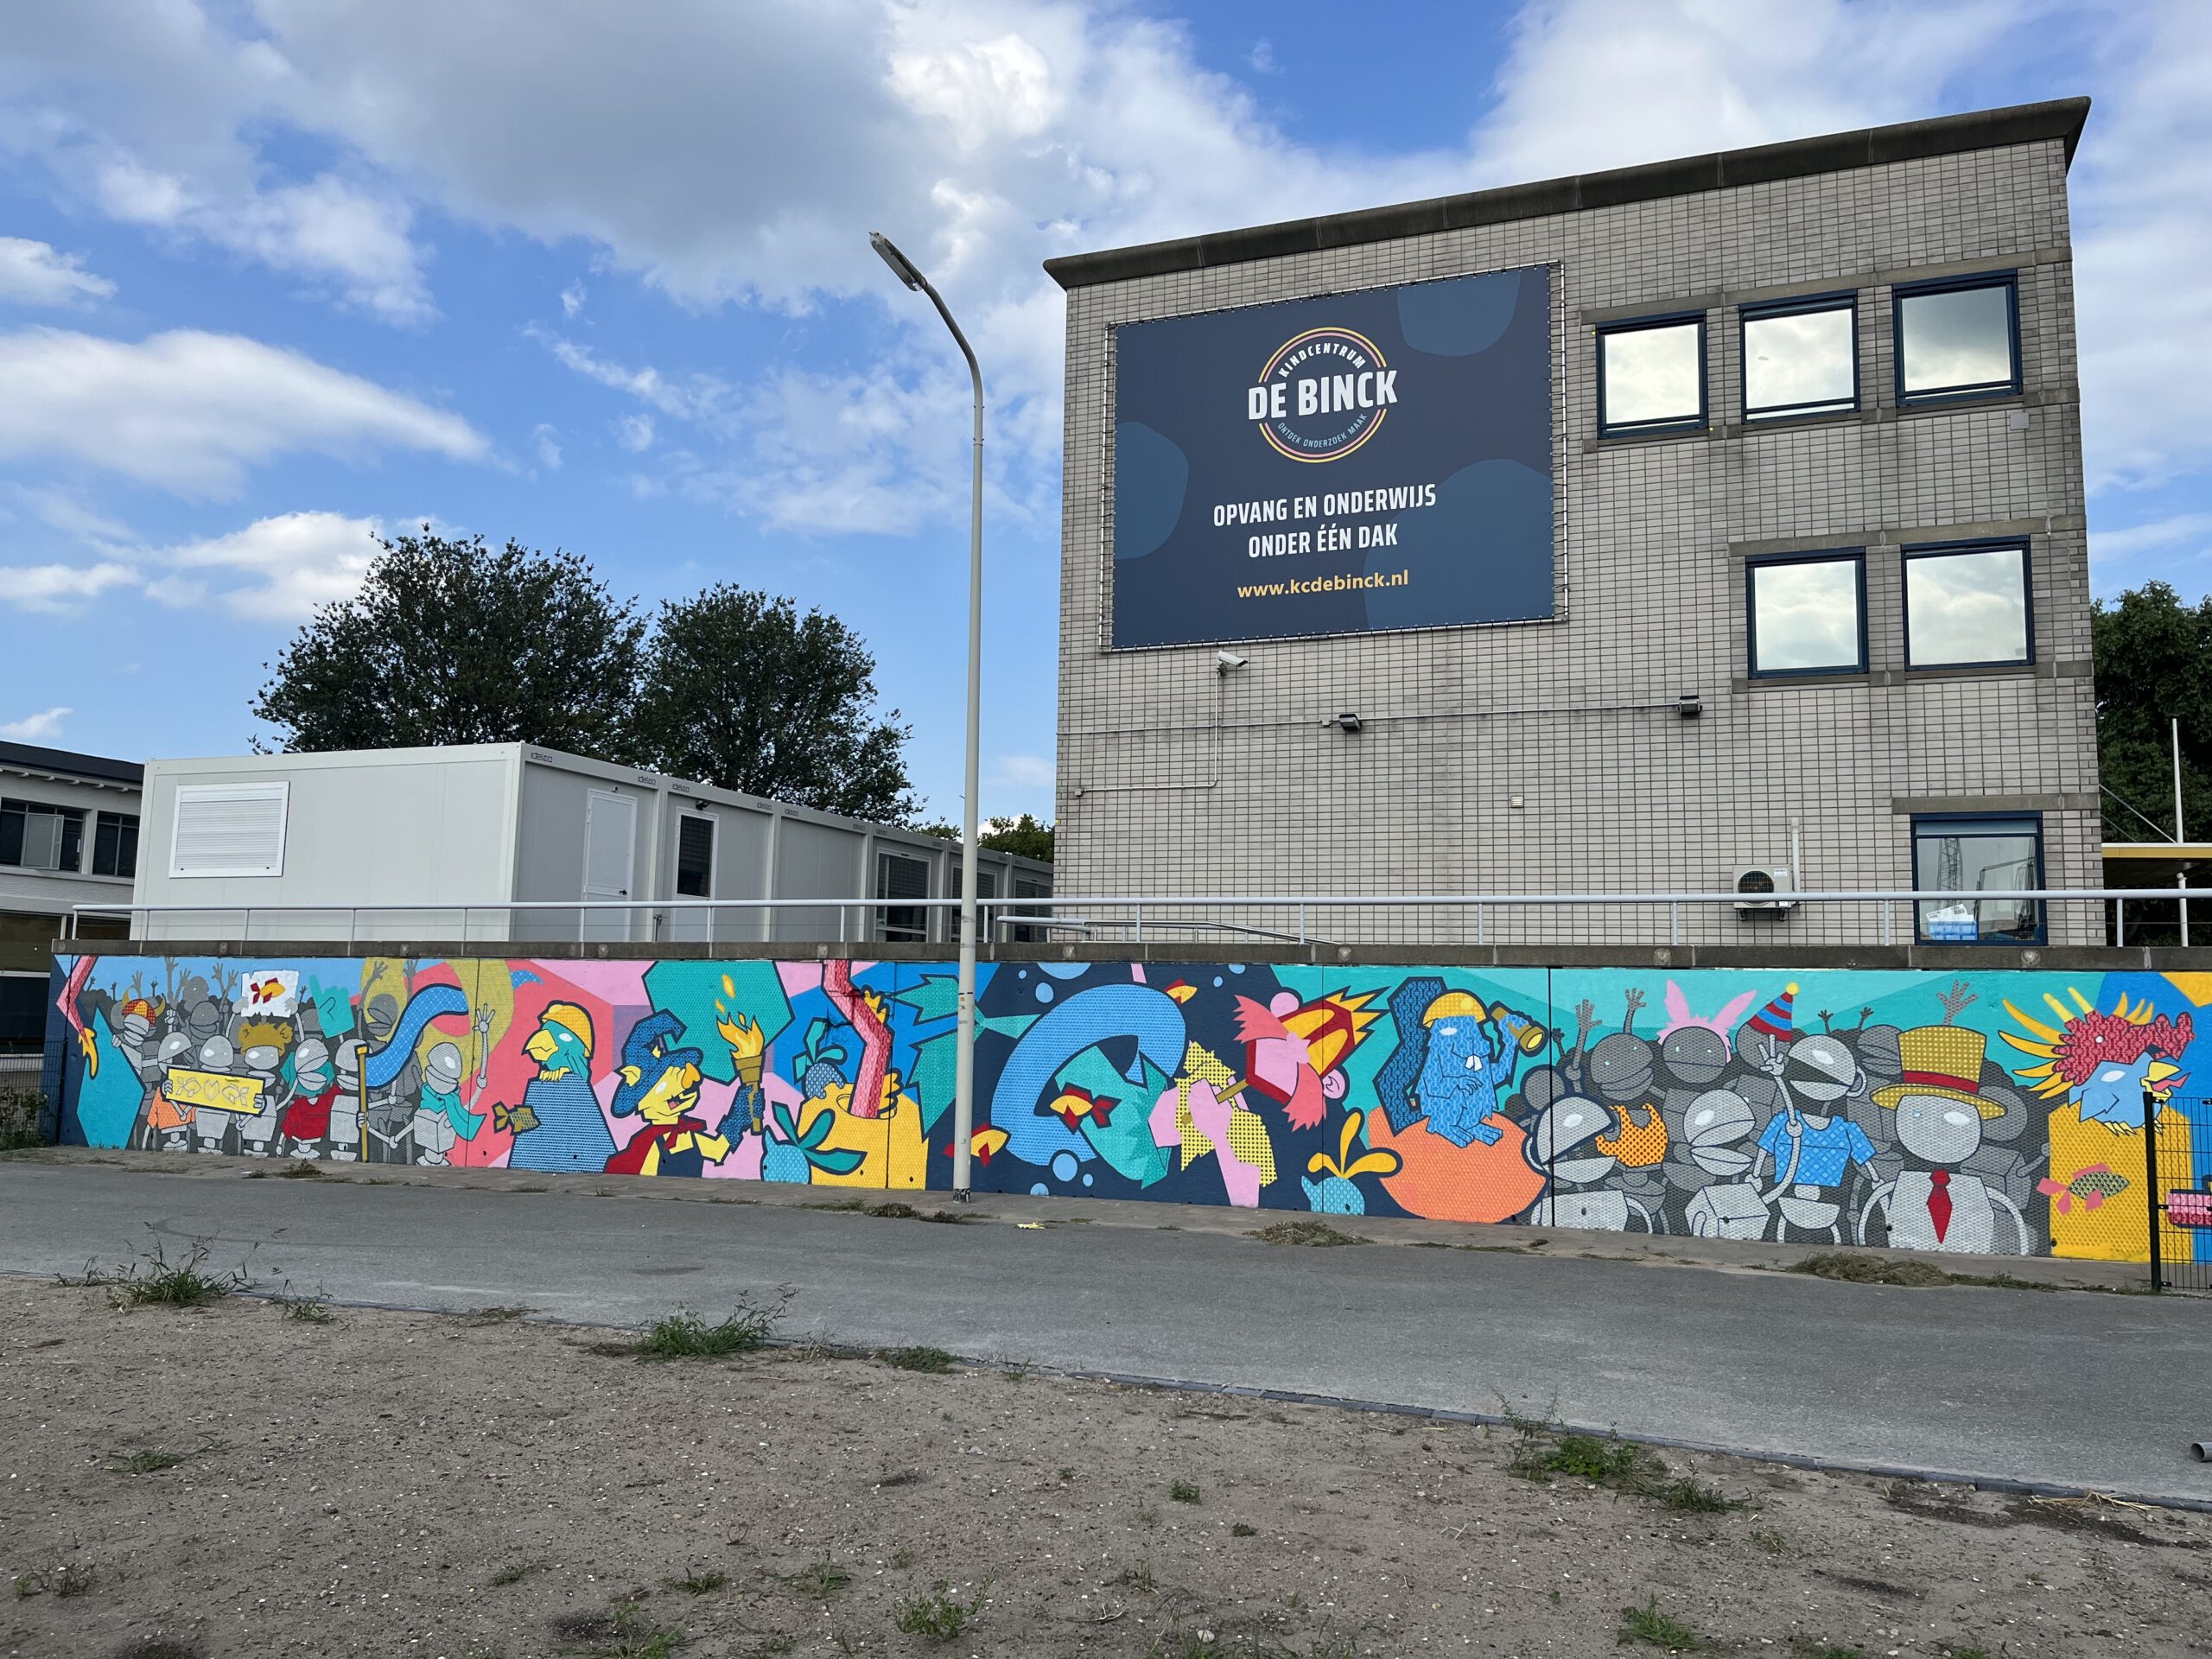 Het gebouw van kindcentrum De Binck, met op de voorgrond de straat met een schutting met graffiti.